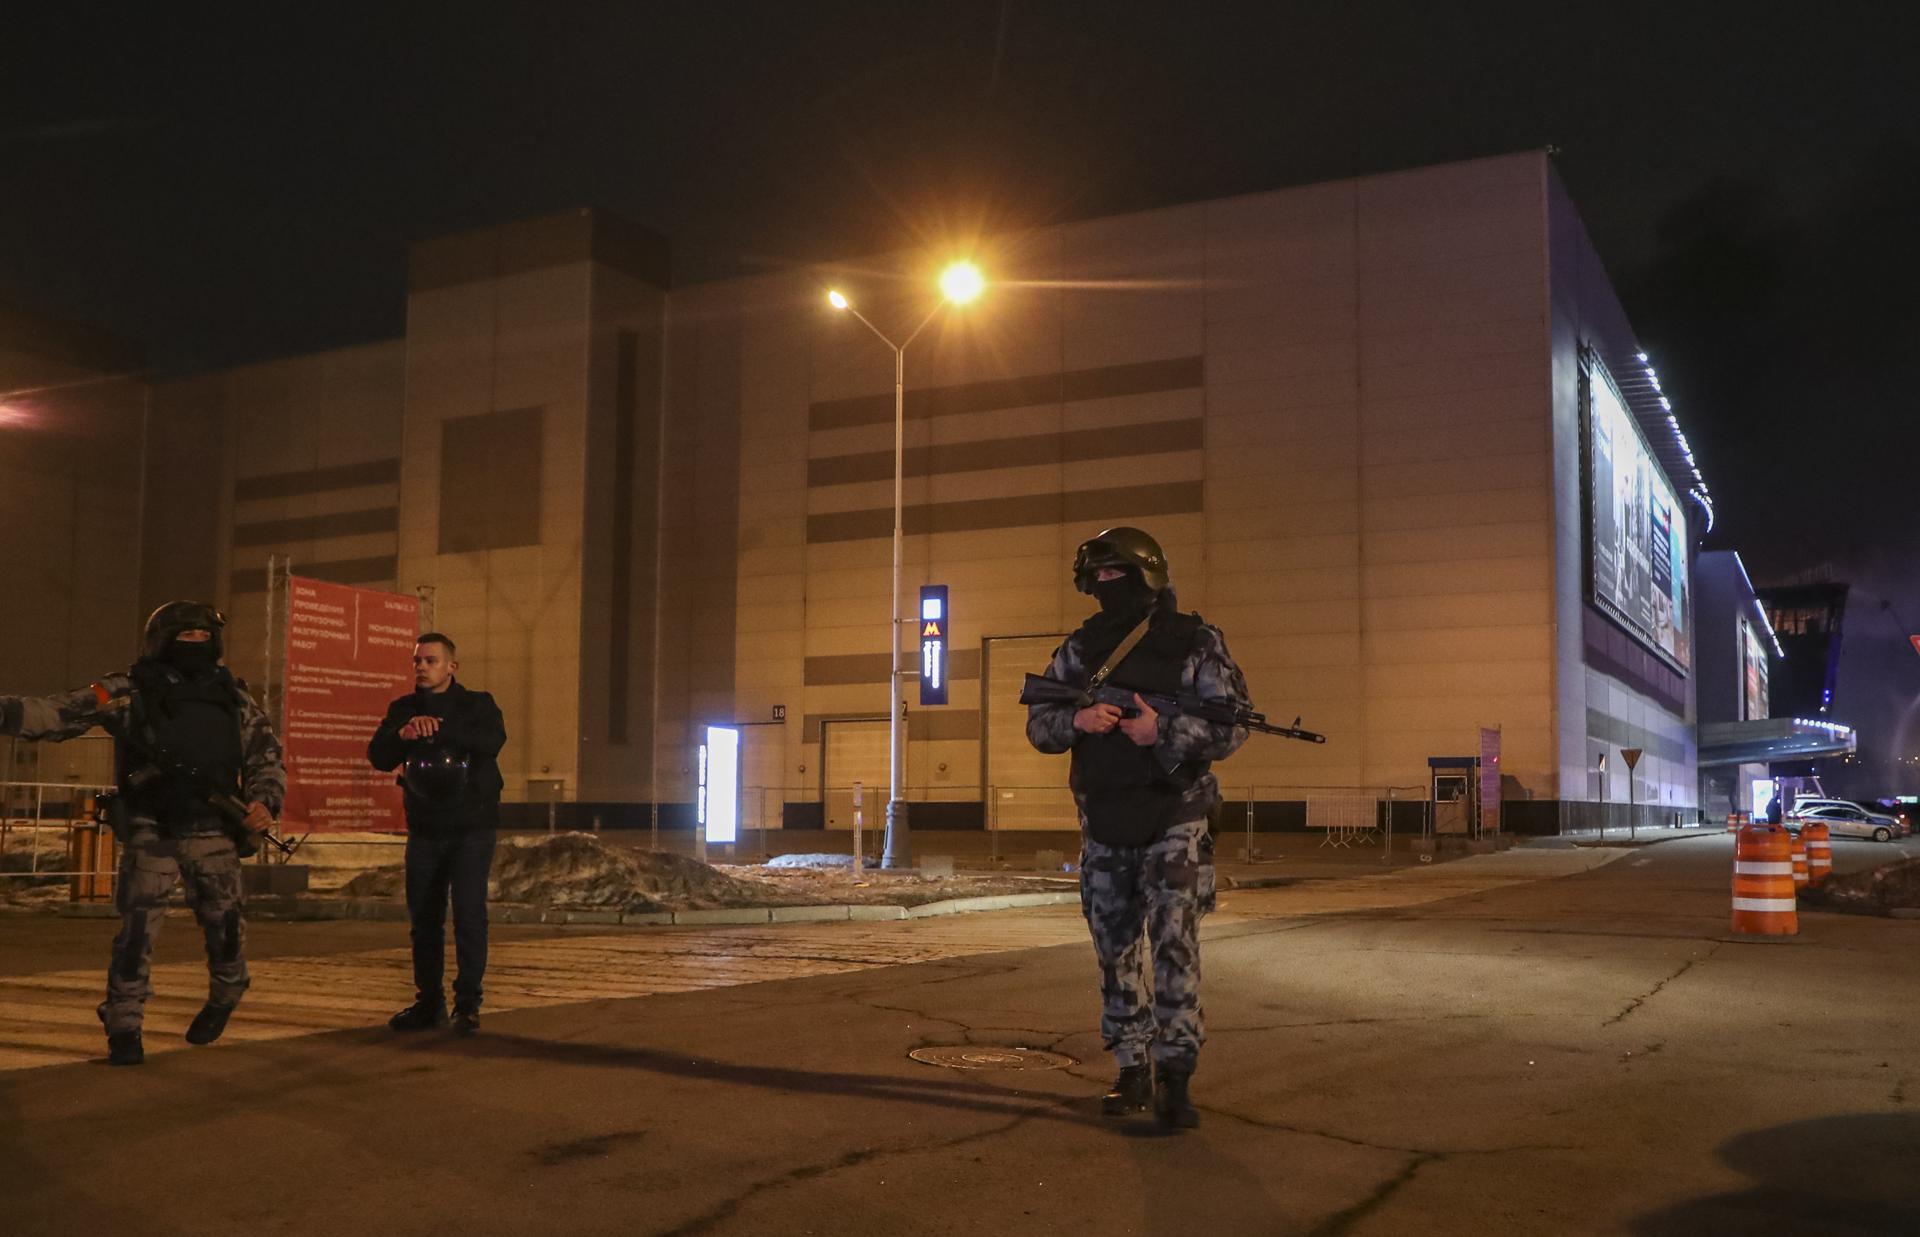 Los fallos de seguridad detrás del atentado en Moscú